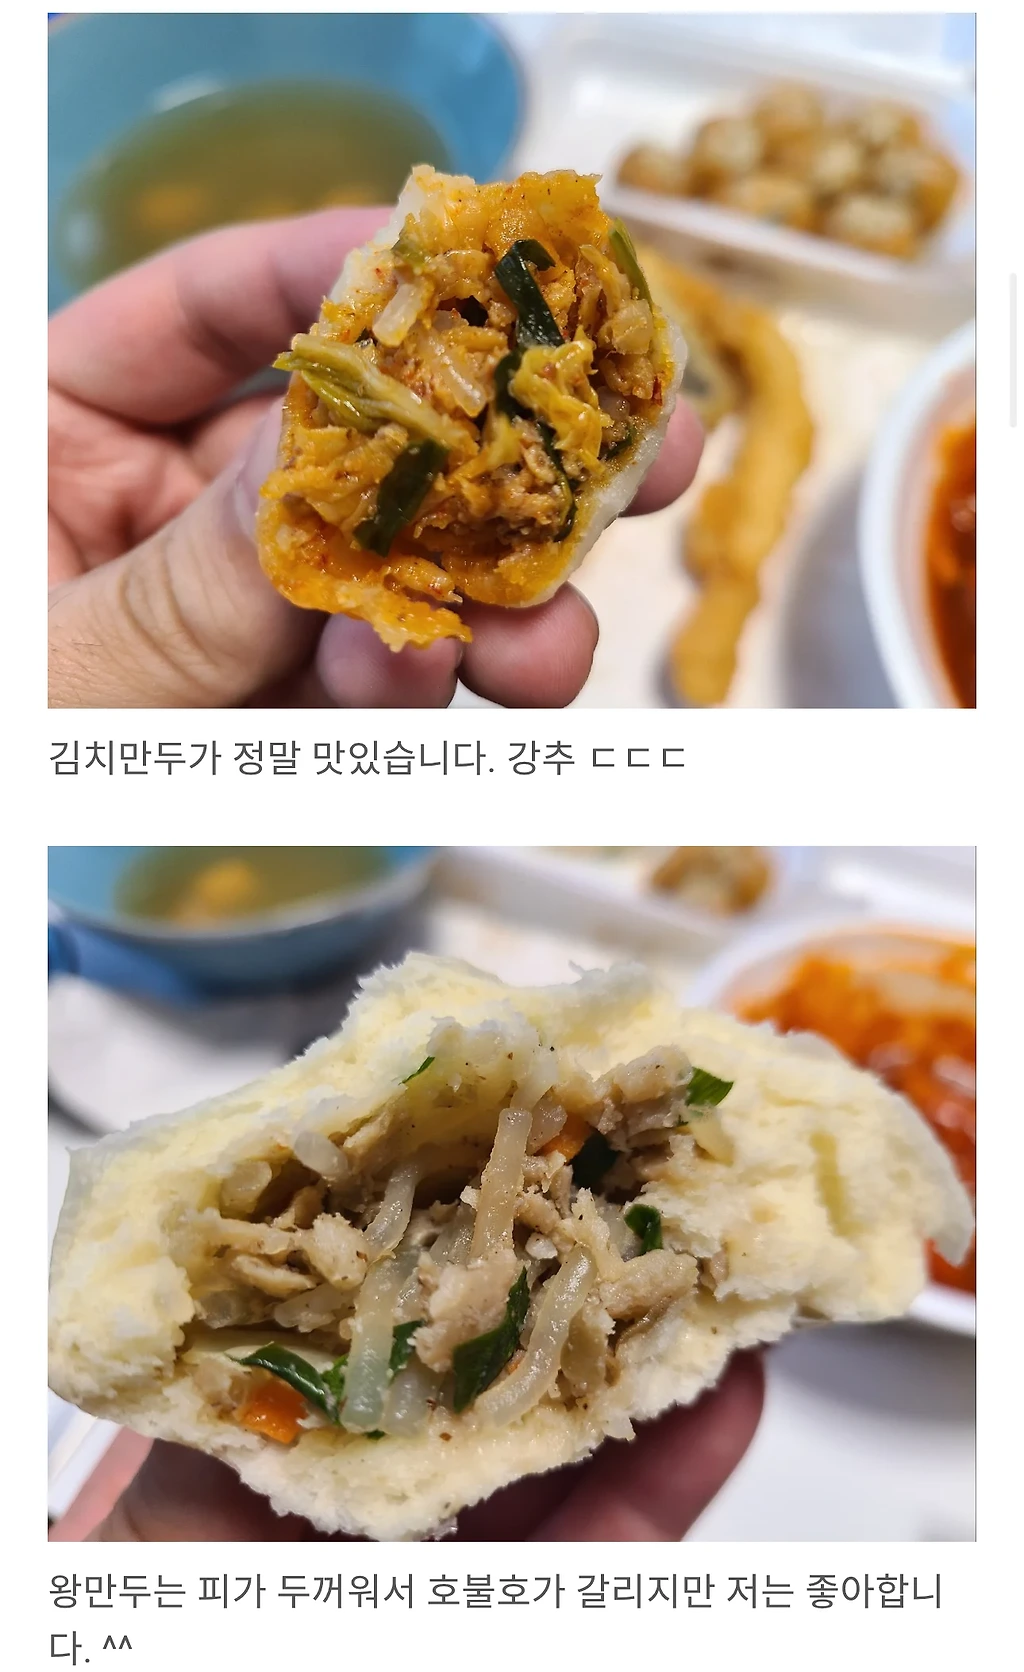 대전 시장에서 분식 1만원어치 먹기